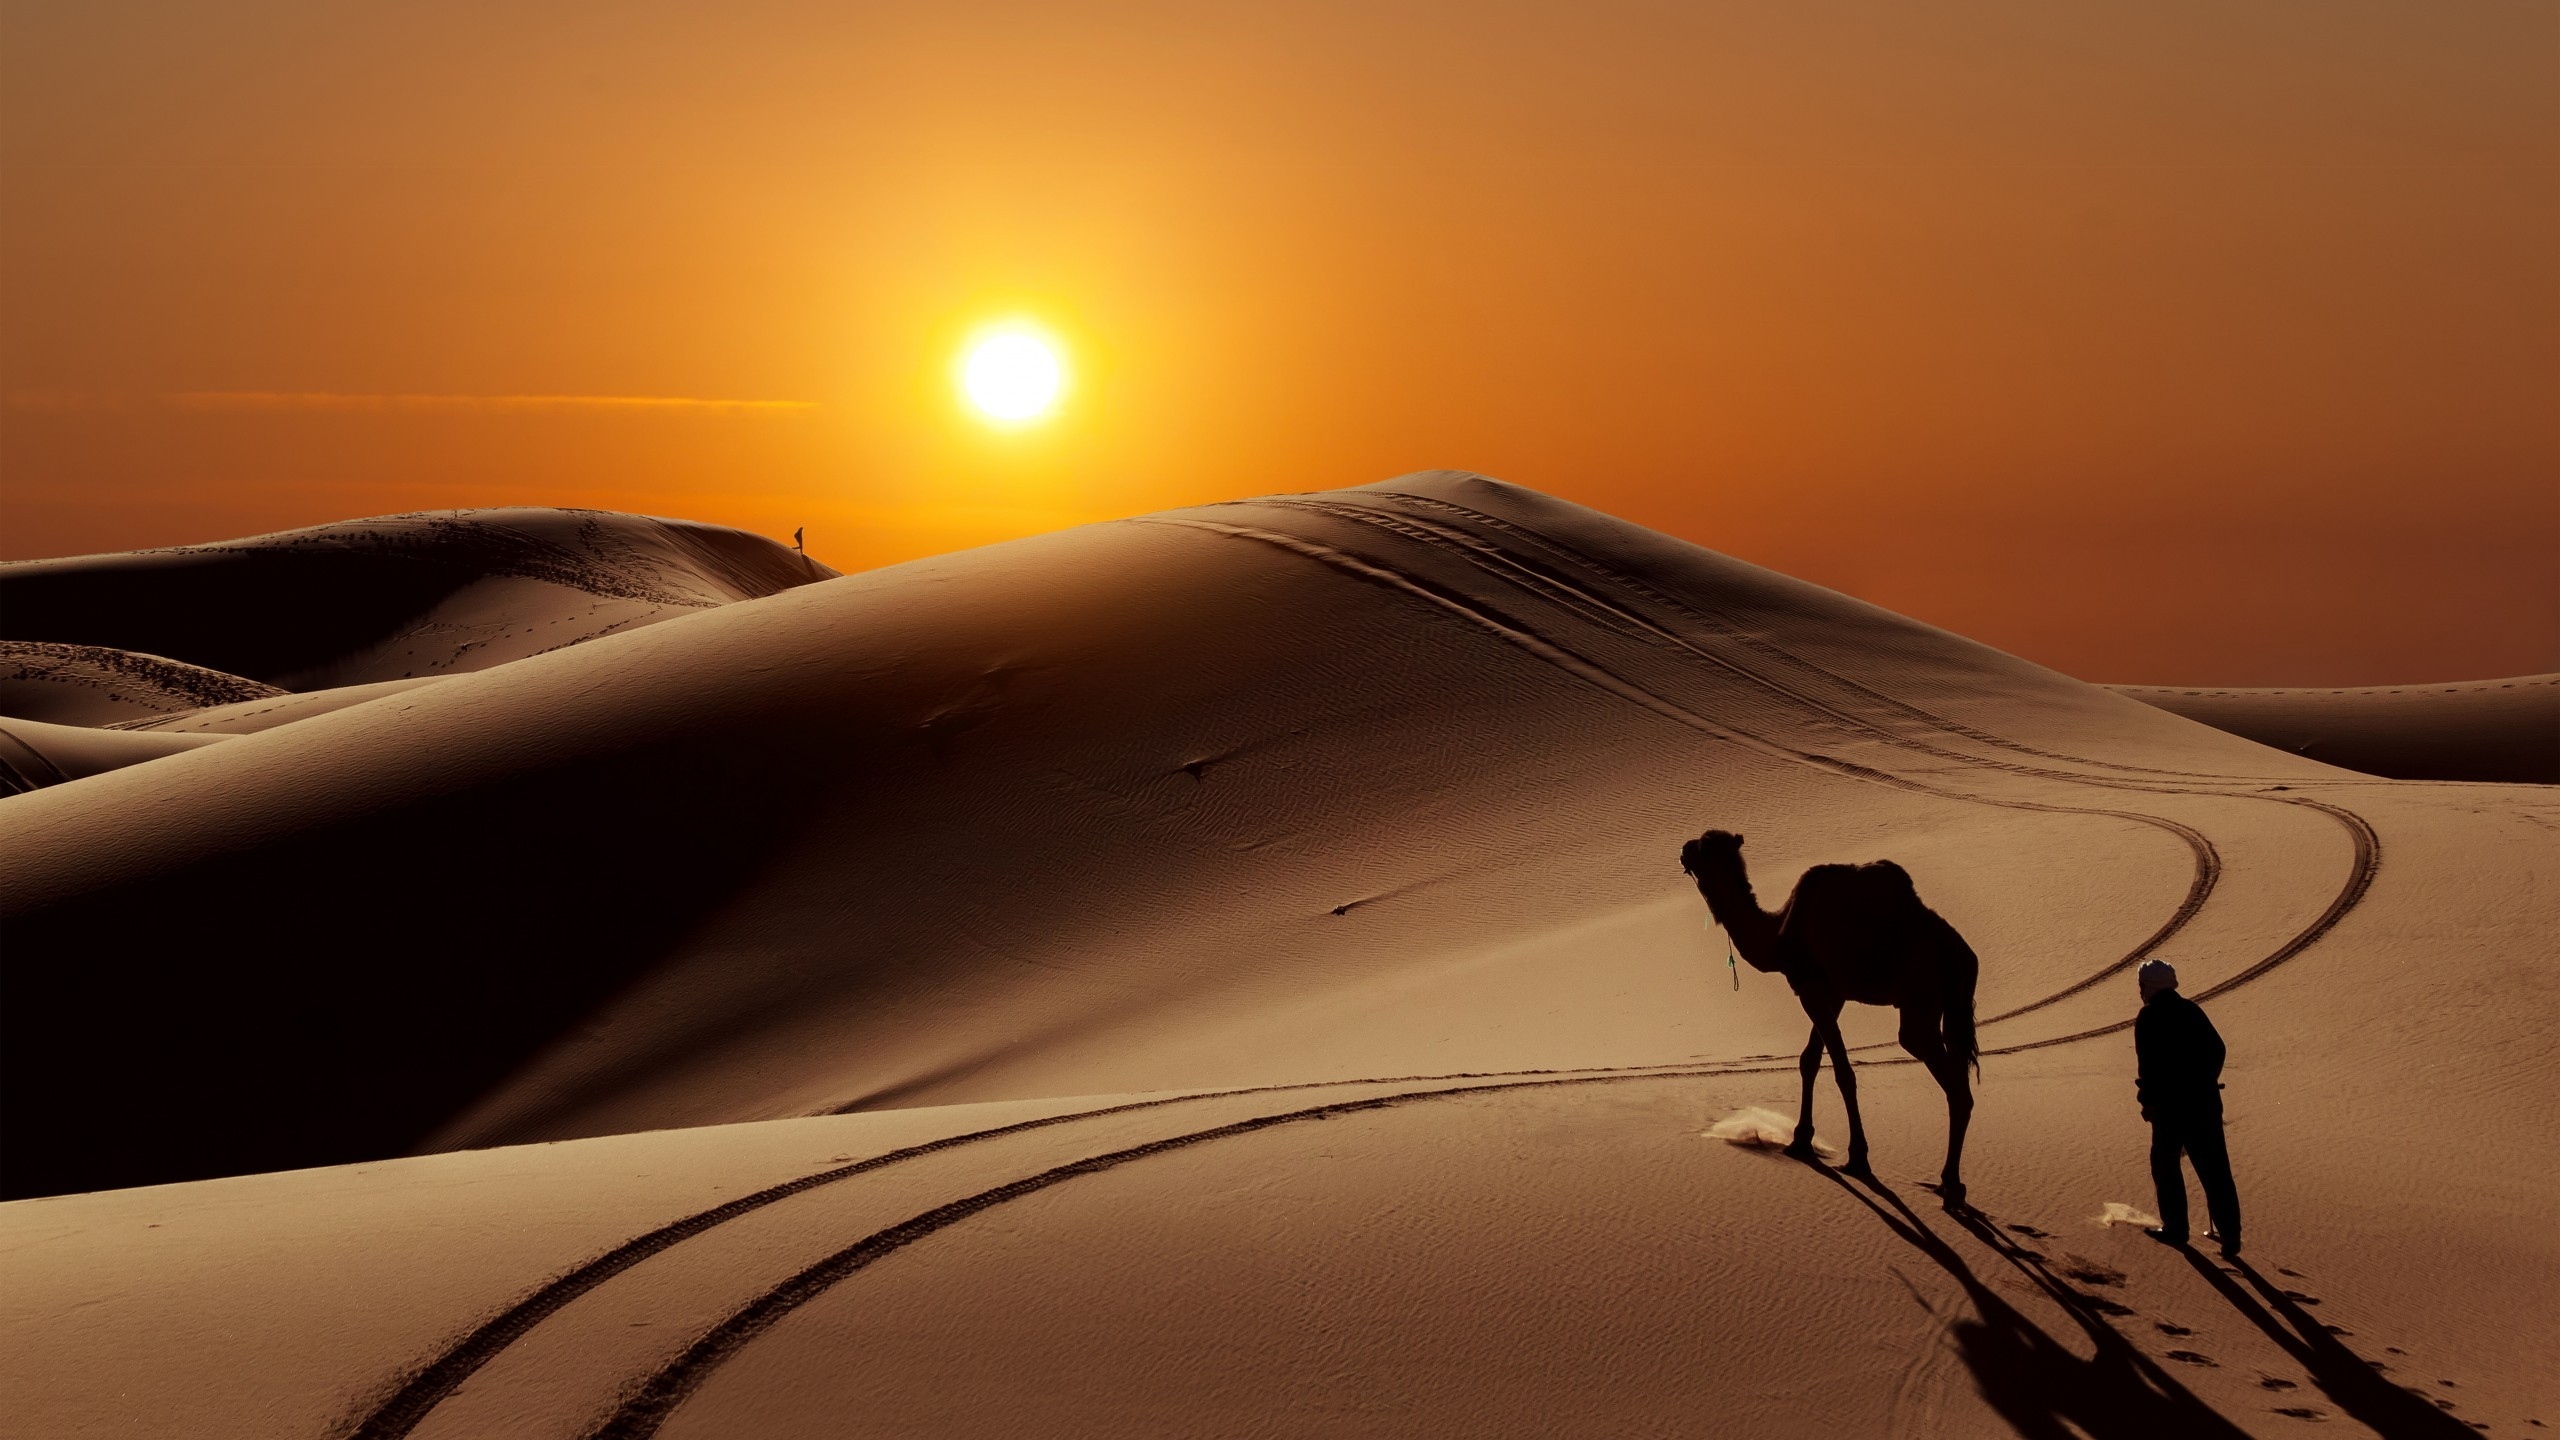 Sunset in Desert for 2560x1440 HDTV resolution